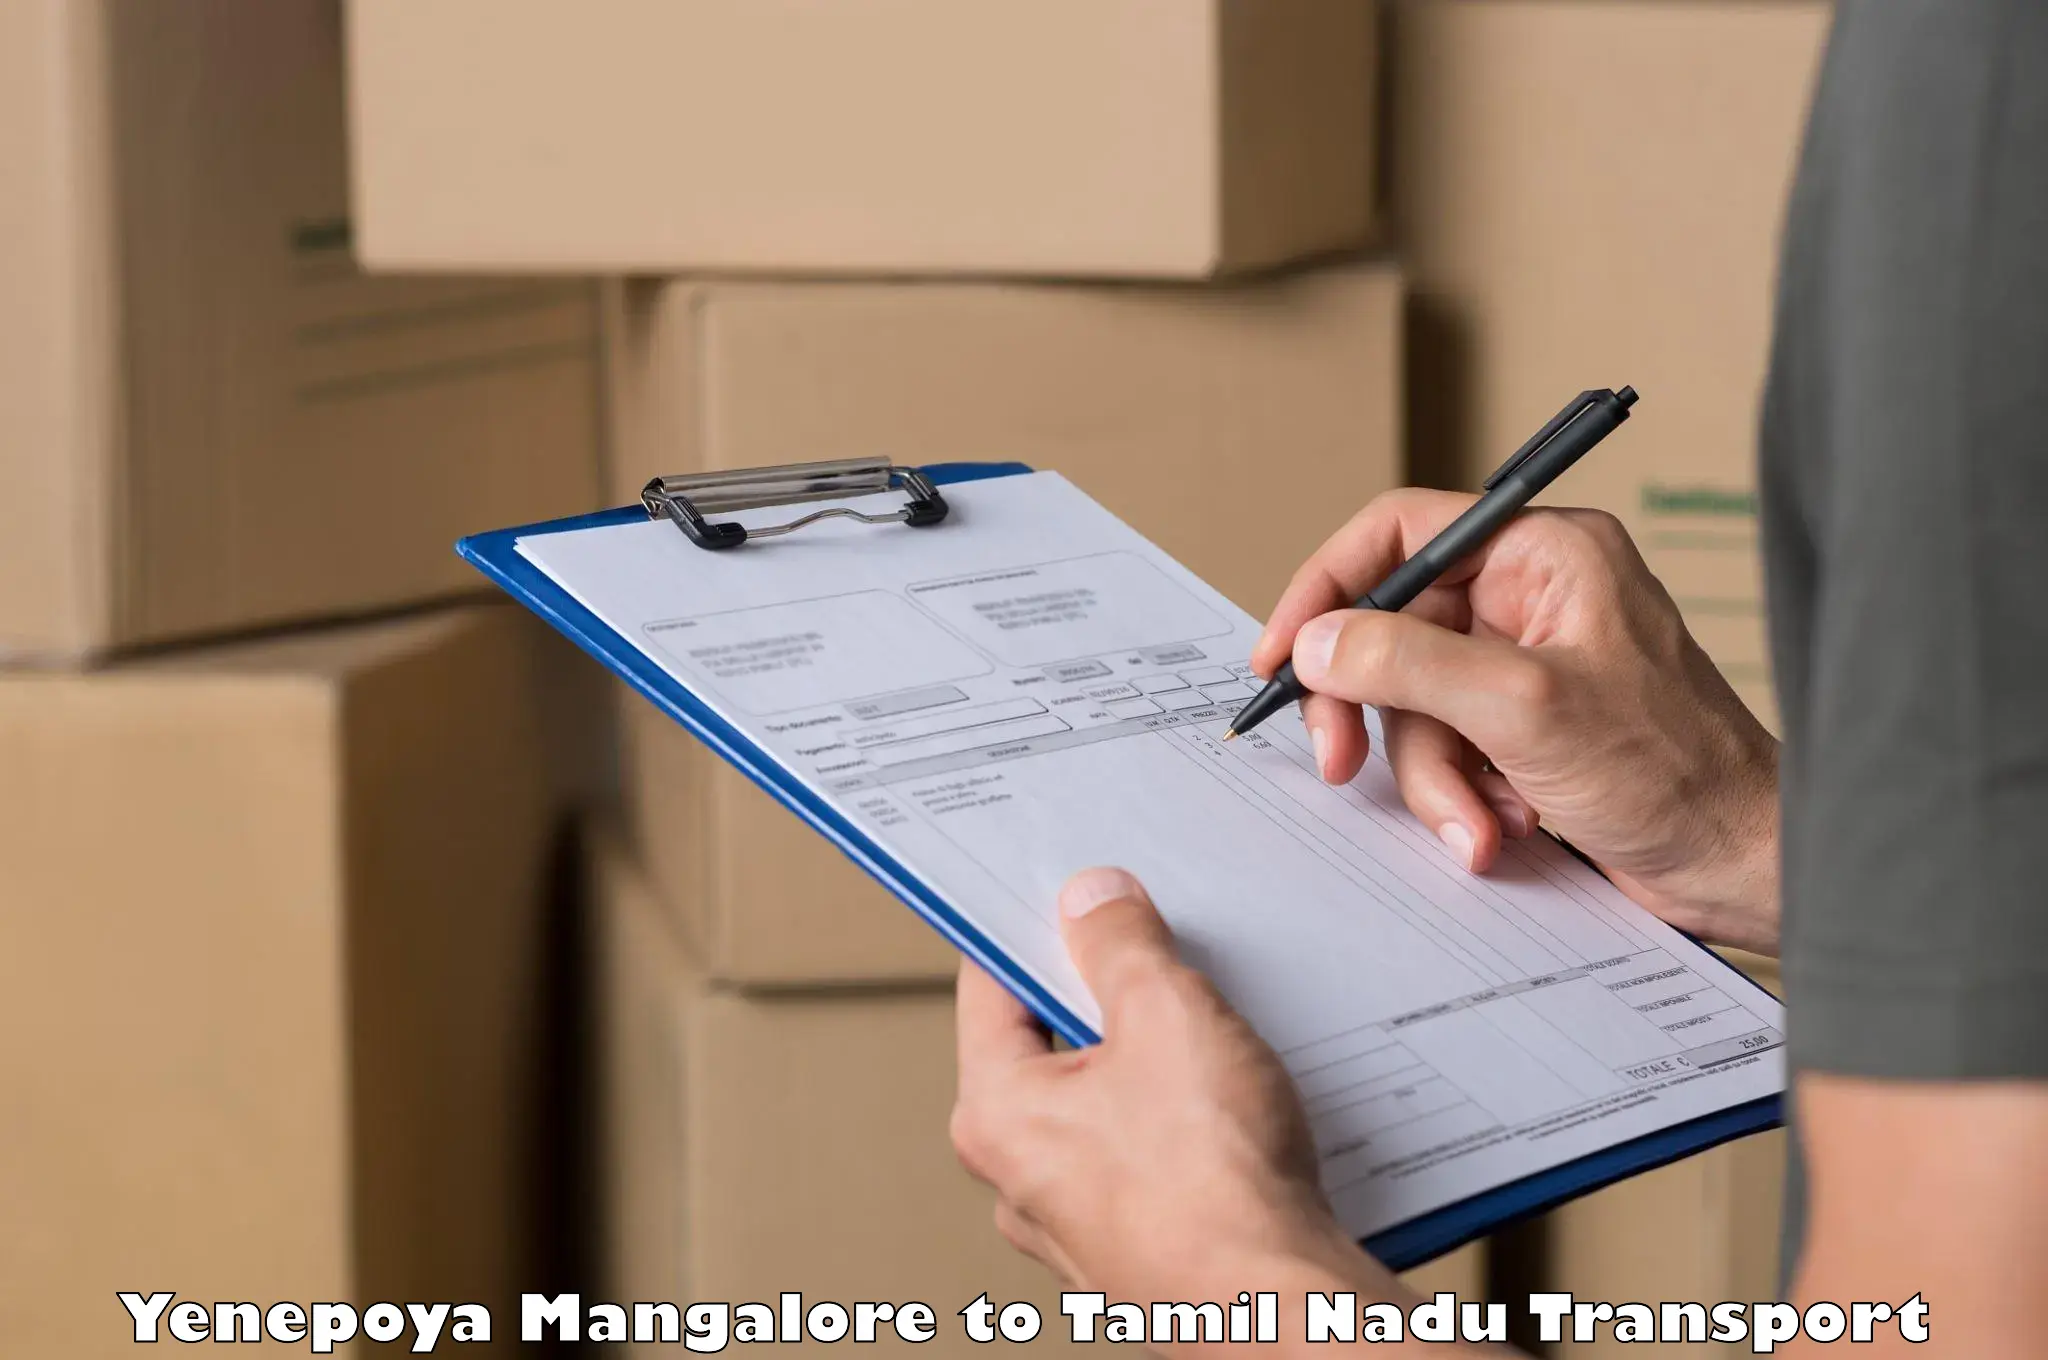 Cargo transportation services Yenepoya Mangalore to Rasipuram